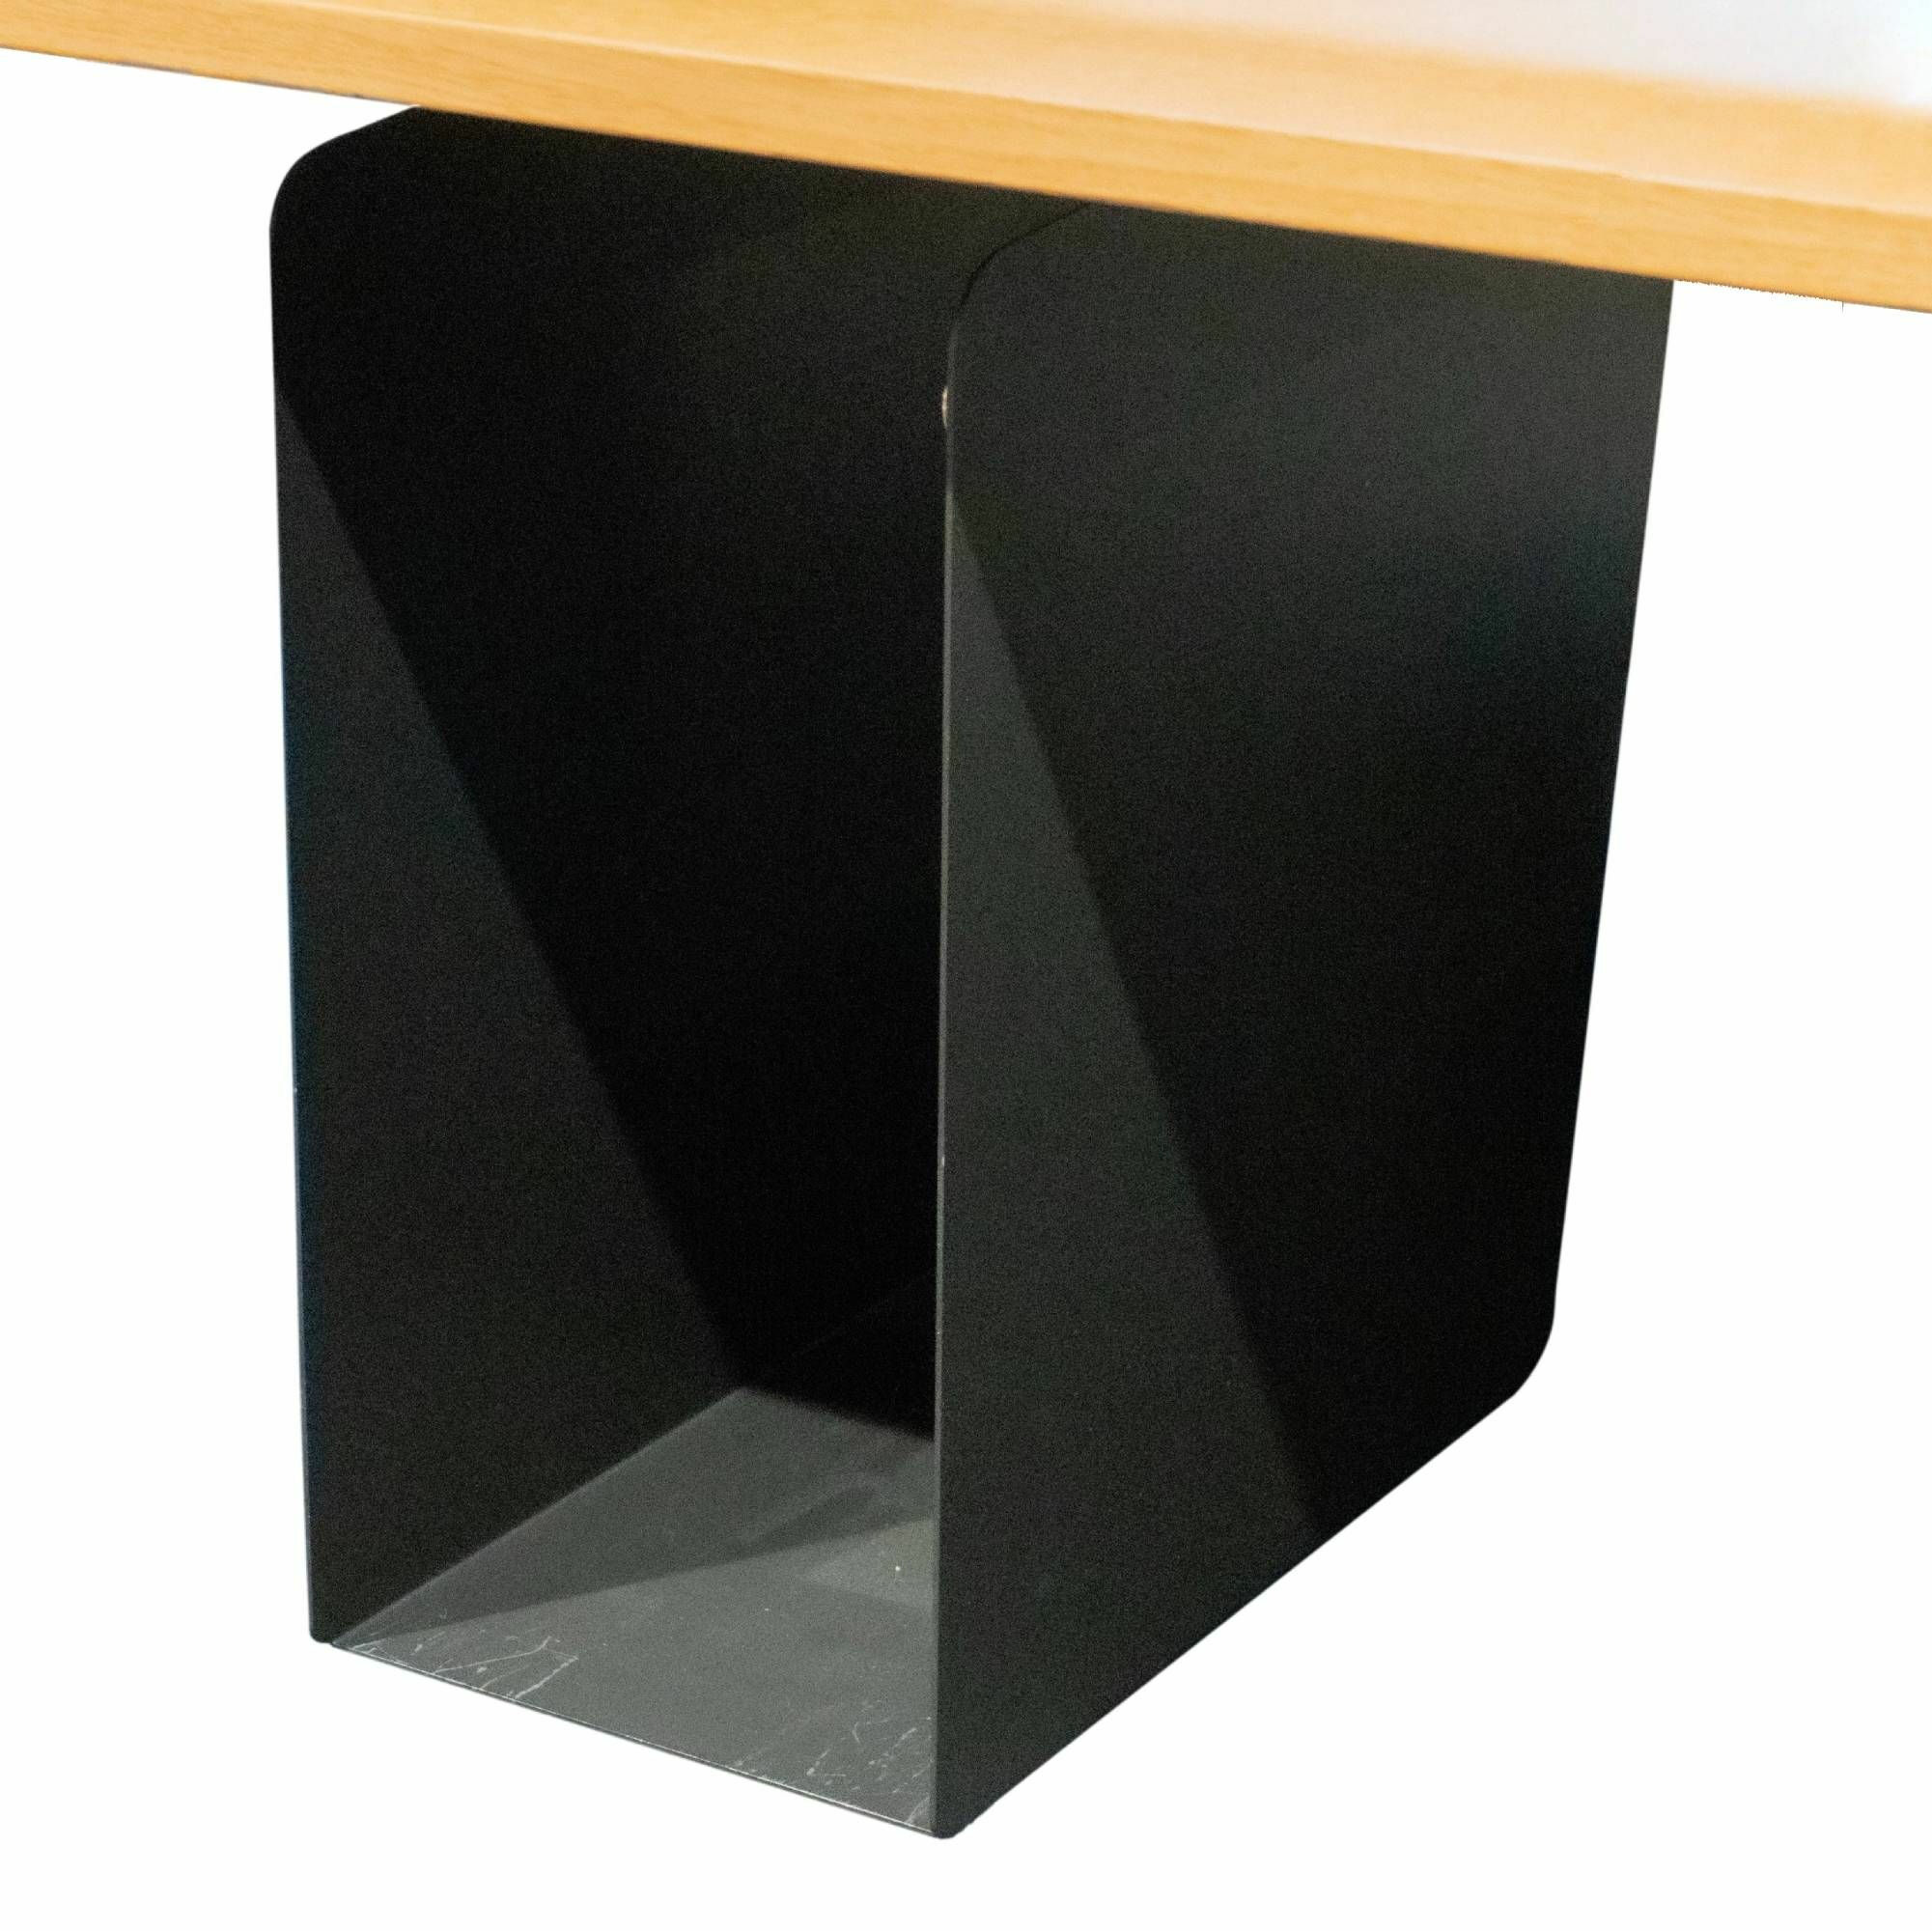 Arbeitsplatz Joyn Tischplatte Furnier Eiche Hell Füsse Aluminium Struktur Beschichtet Basic Dark